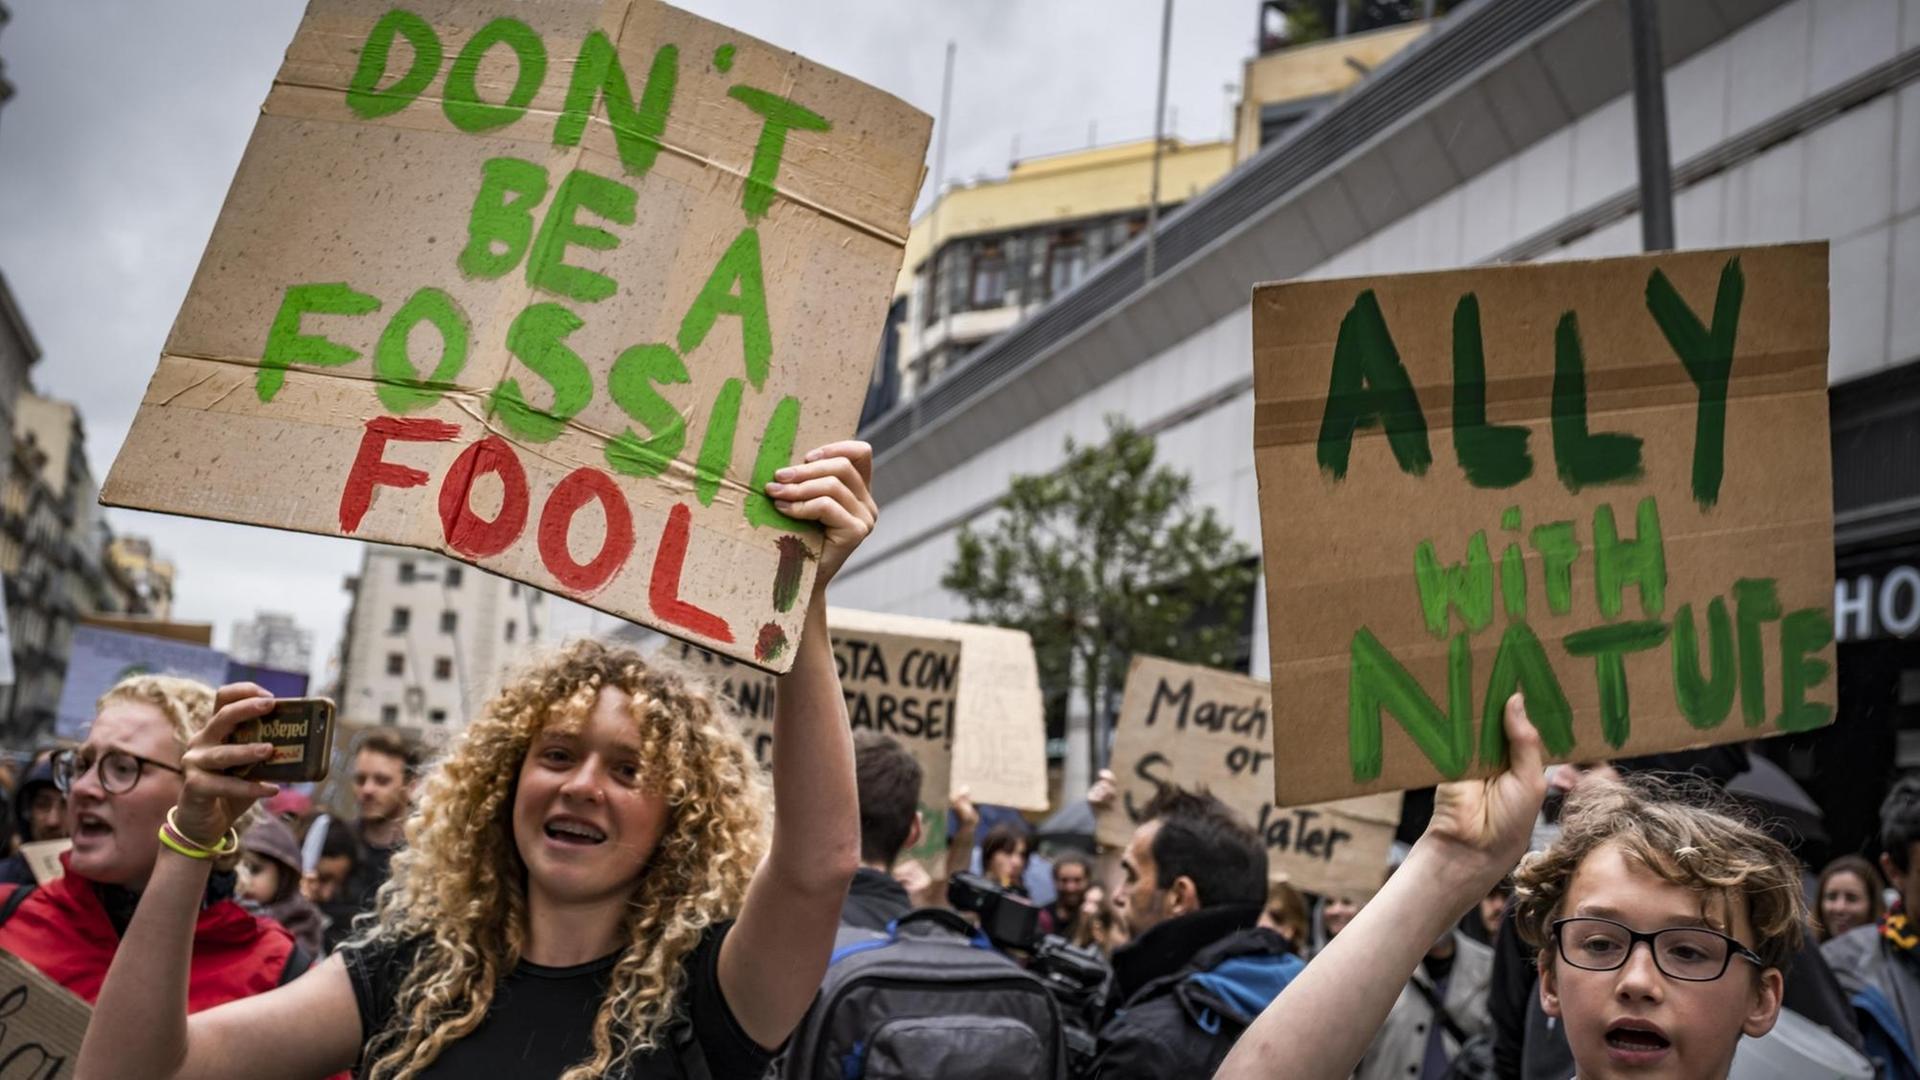 Jugendliche DemonstrantInnen die ein Schild mit der Aufschrift "Don't be a fossil - Fool!" hochhalten.